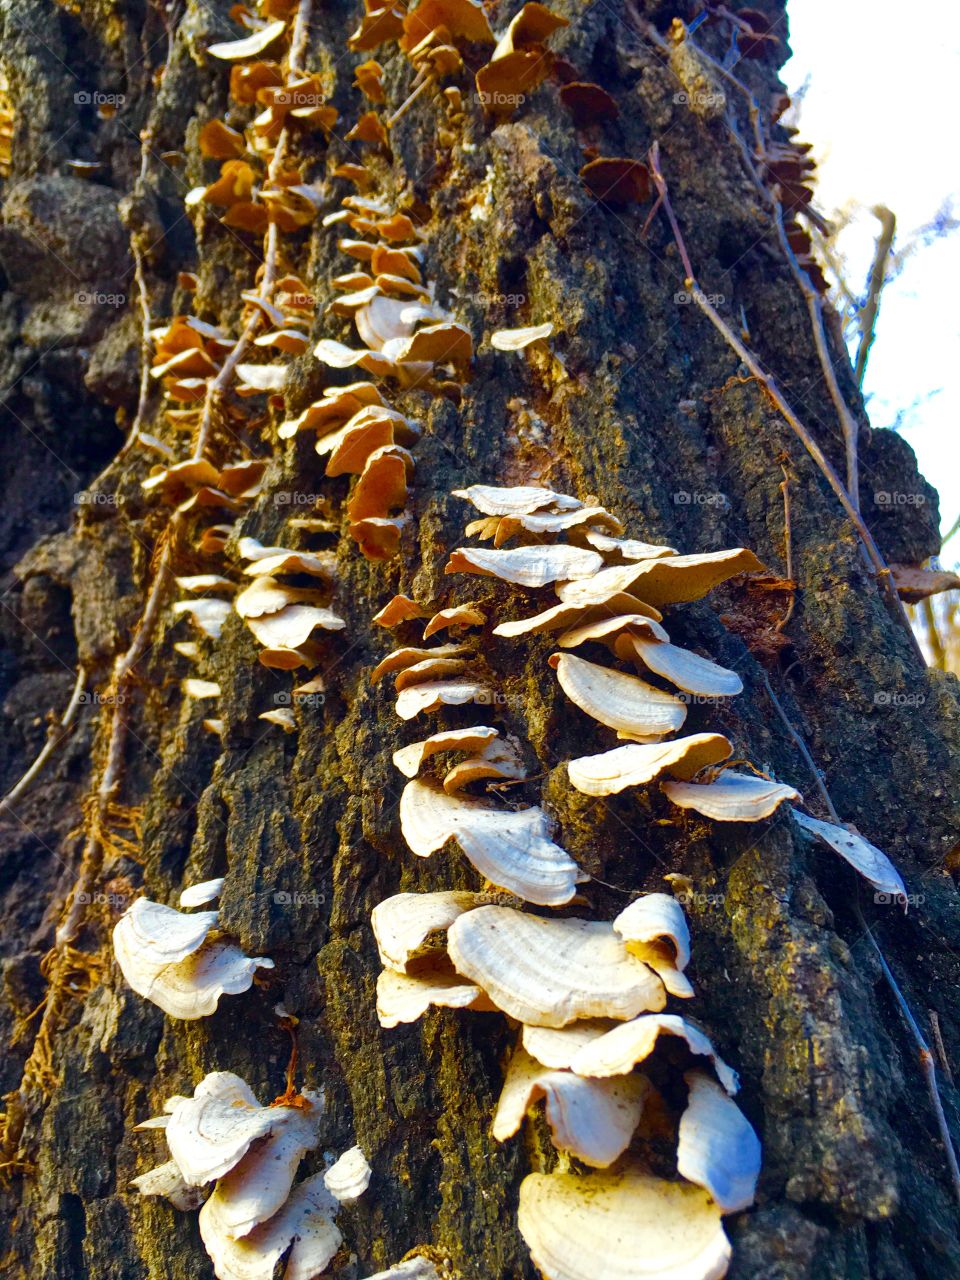 Fungus, Nature, Wood, Tree, Mushroom